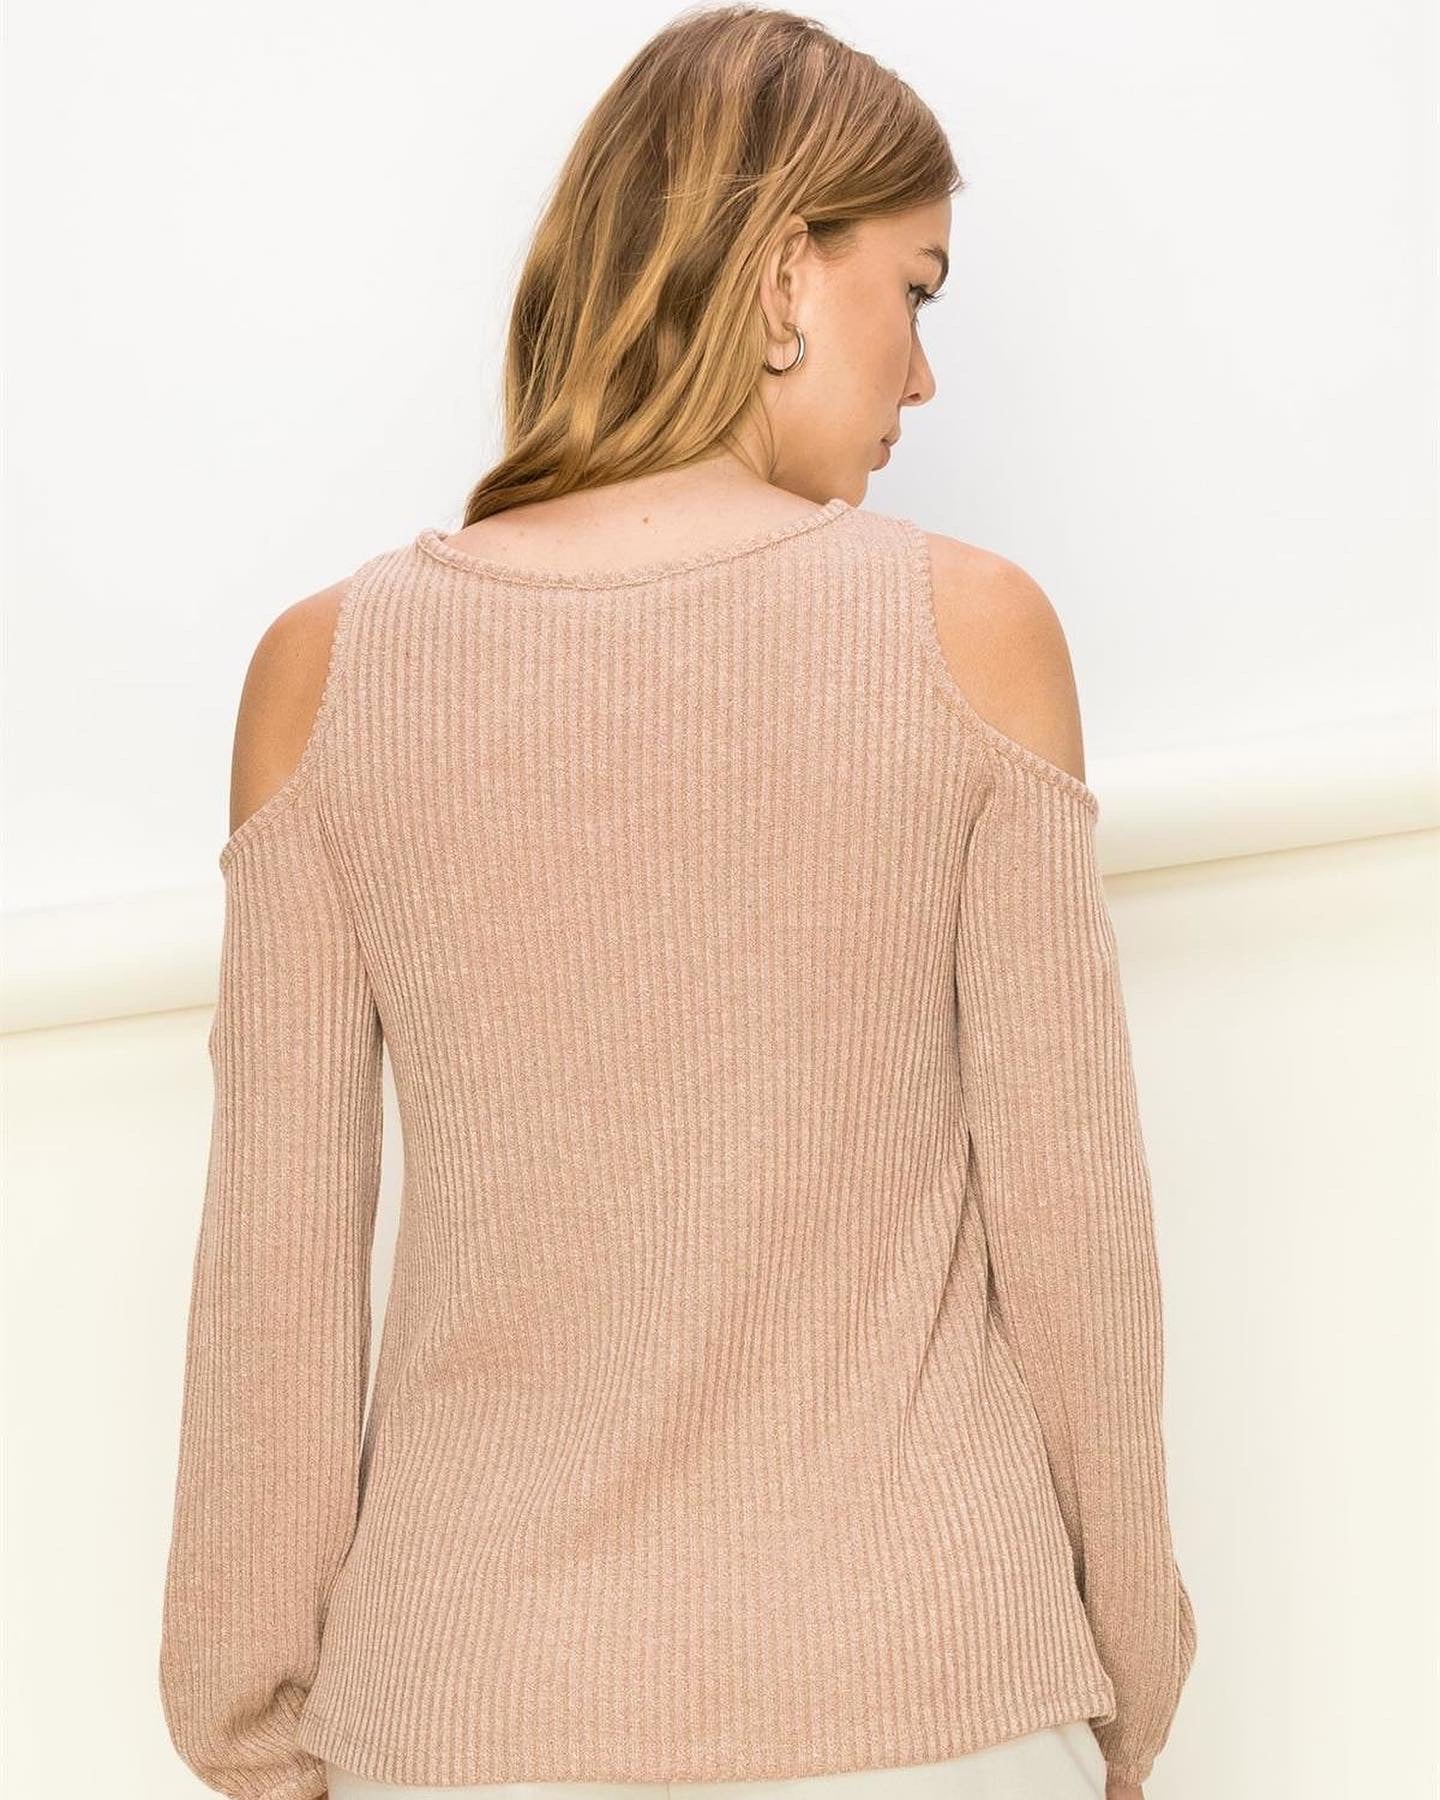 Crisscross Lightweight Sweater